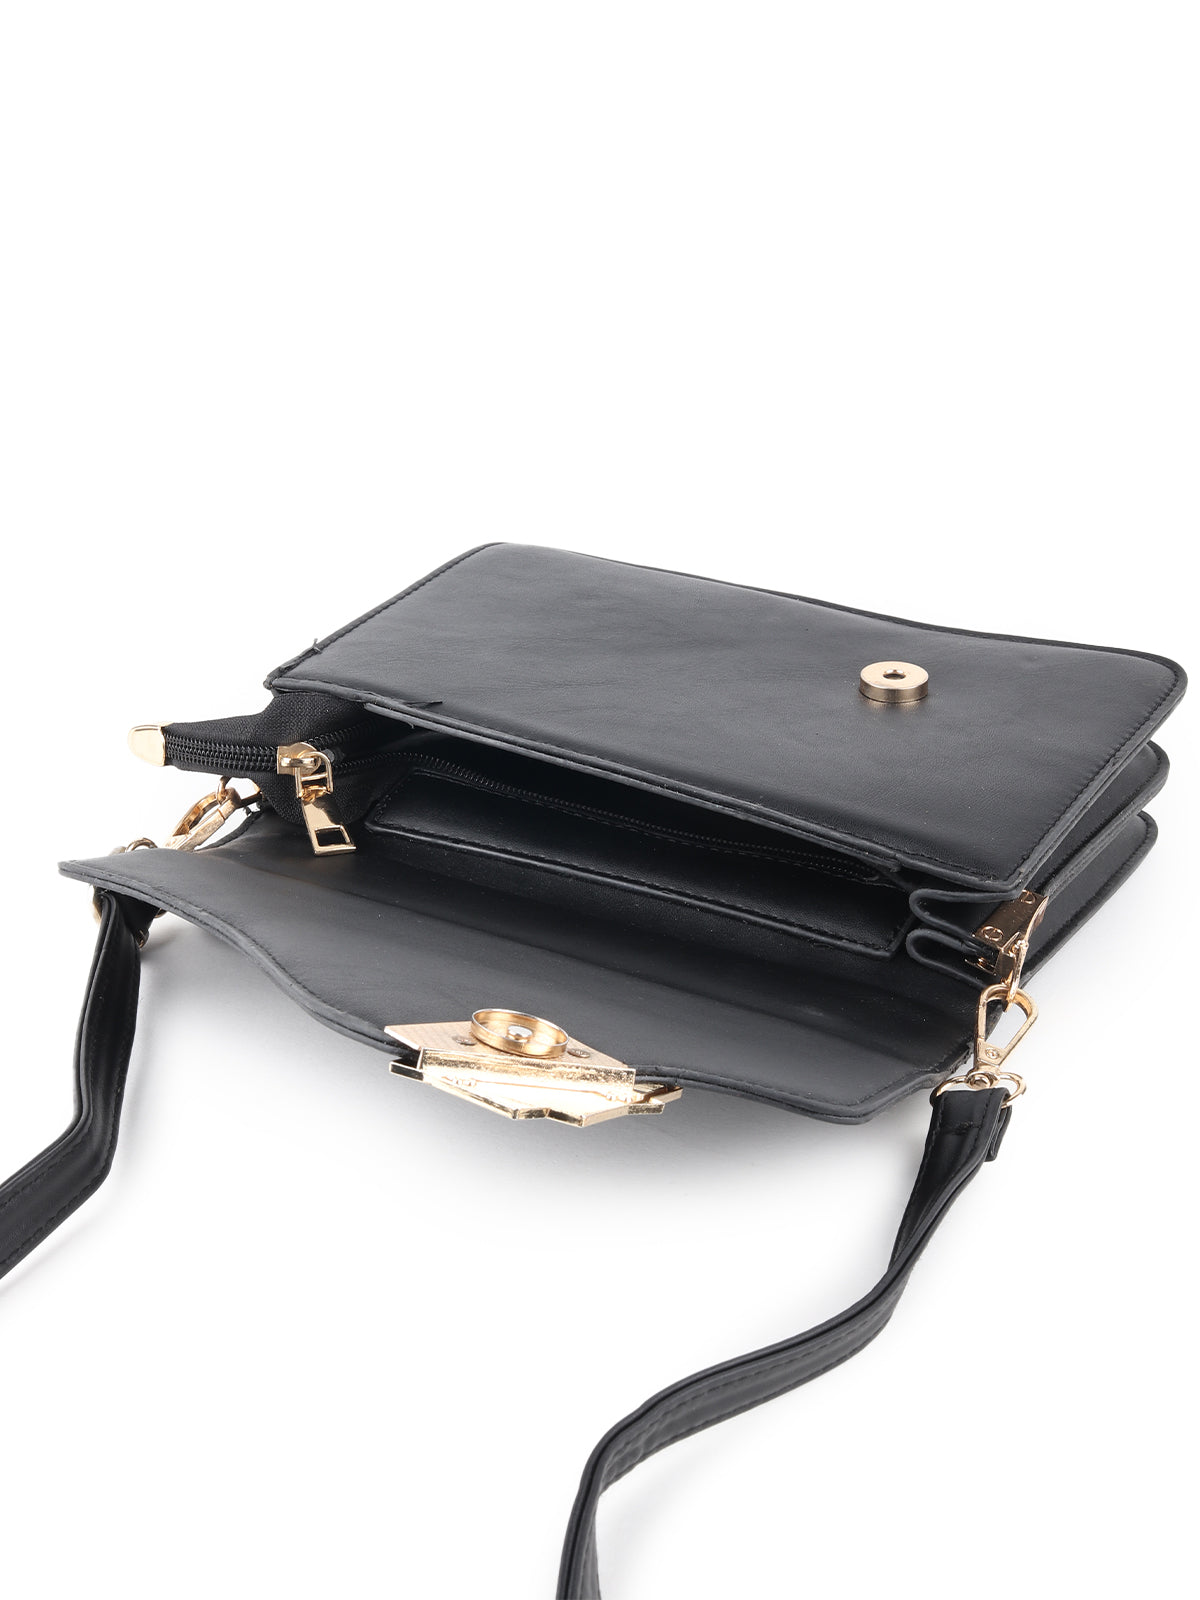 Odette Black Patterned Clutch Bag For Women